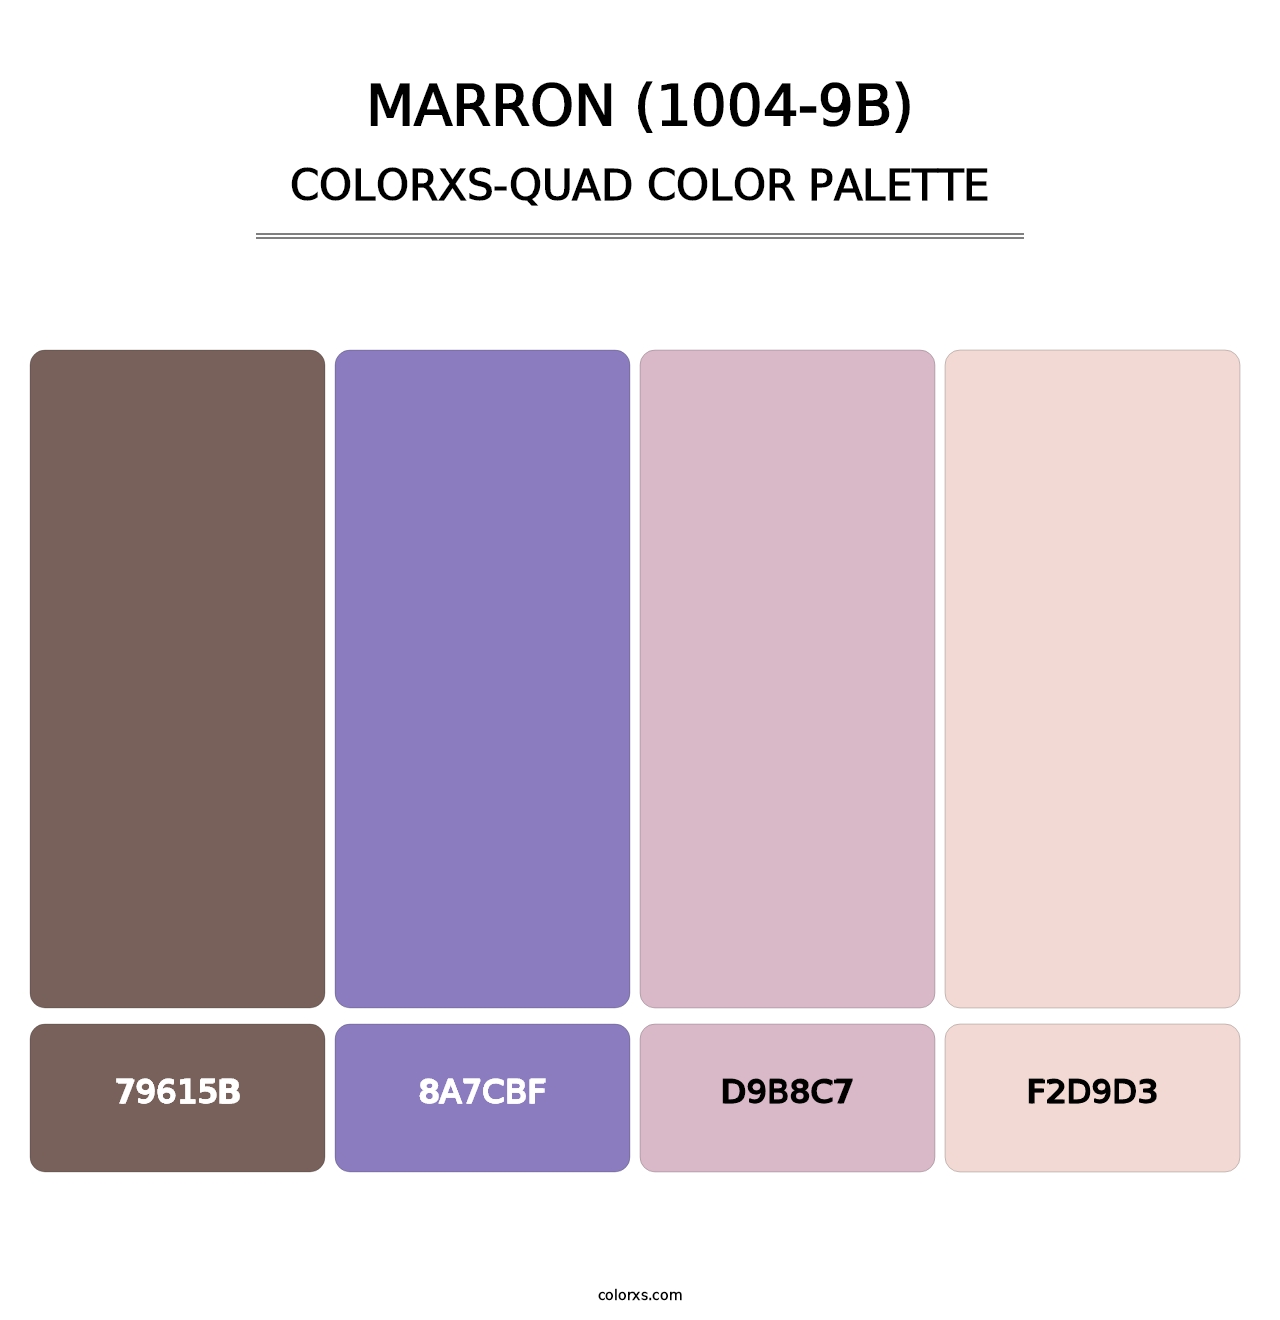 Marron (1004-9B) - Colorxs Quad Palette